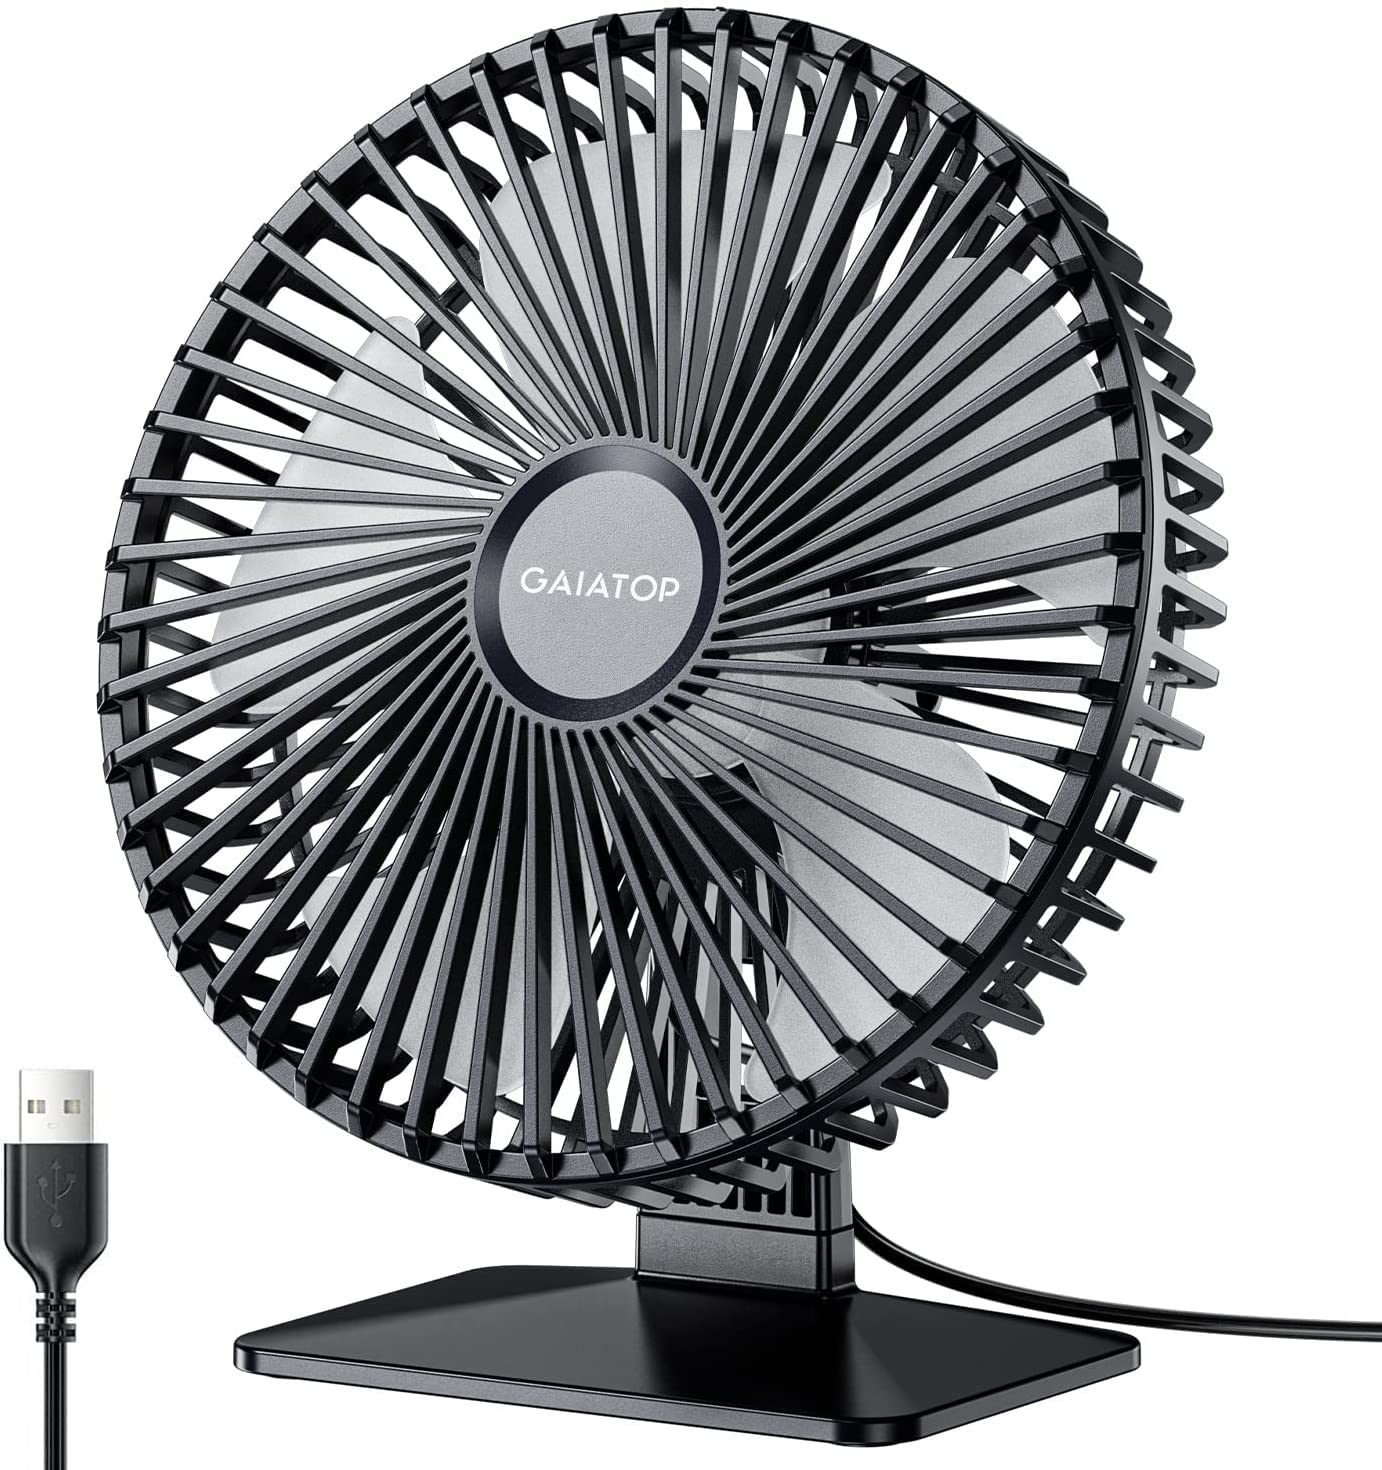 Gaiatop Small Table Fan, 6.5 Inch Portable Mini Powerful Desktop Table Fan -offers & Discounts- 